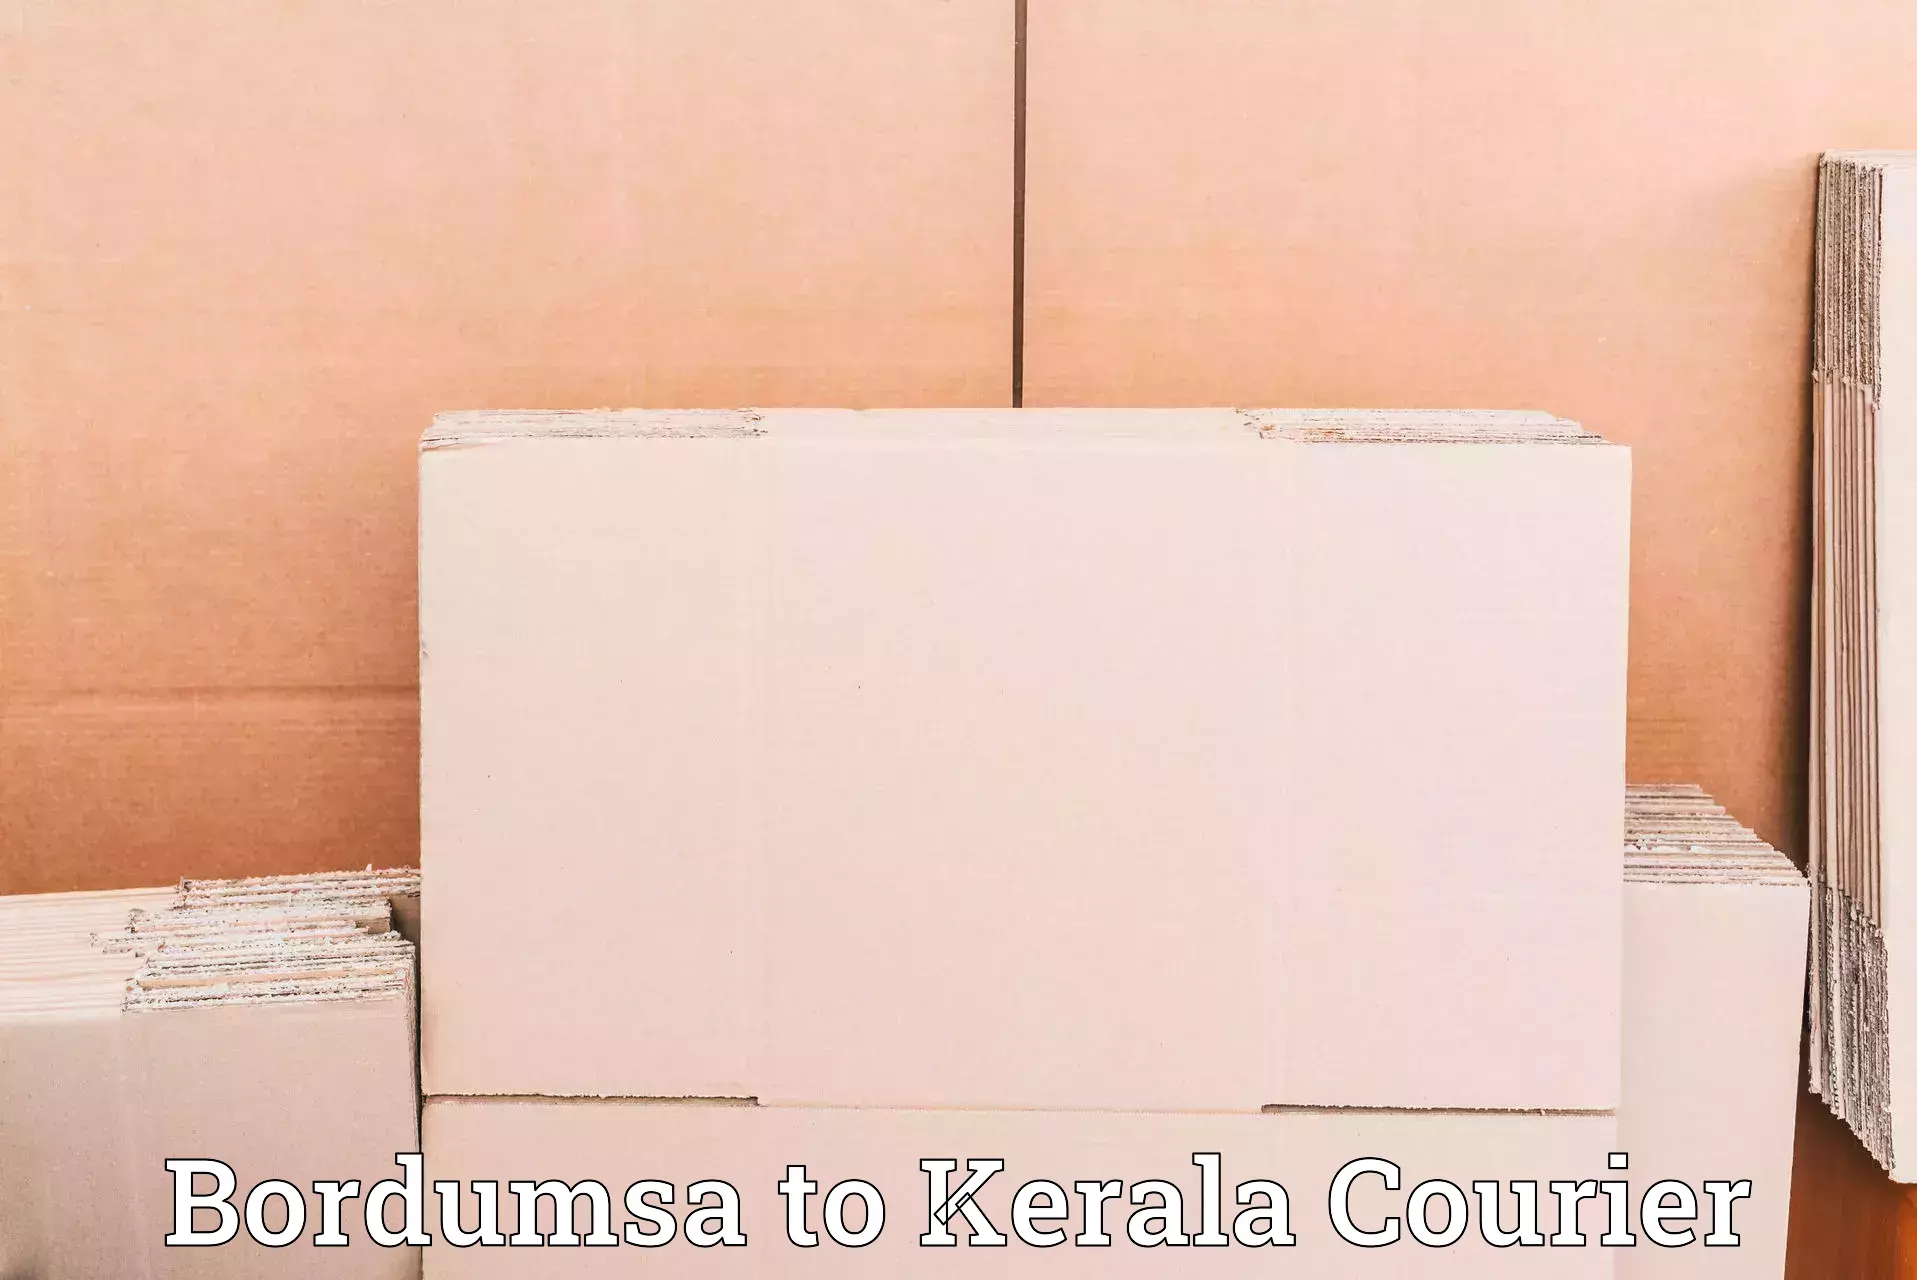 Efficient order fulfillment in Bordumsa to Cochin